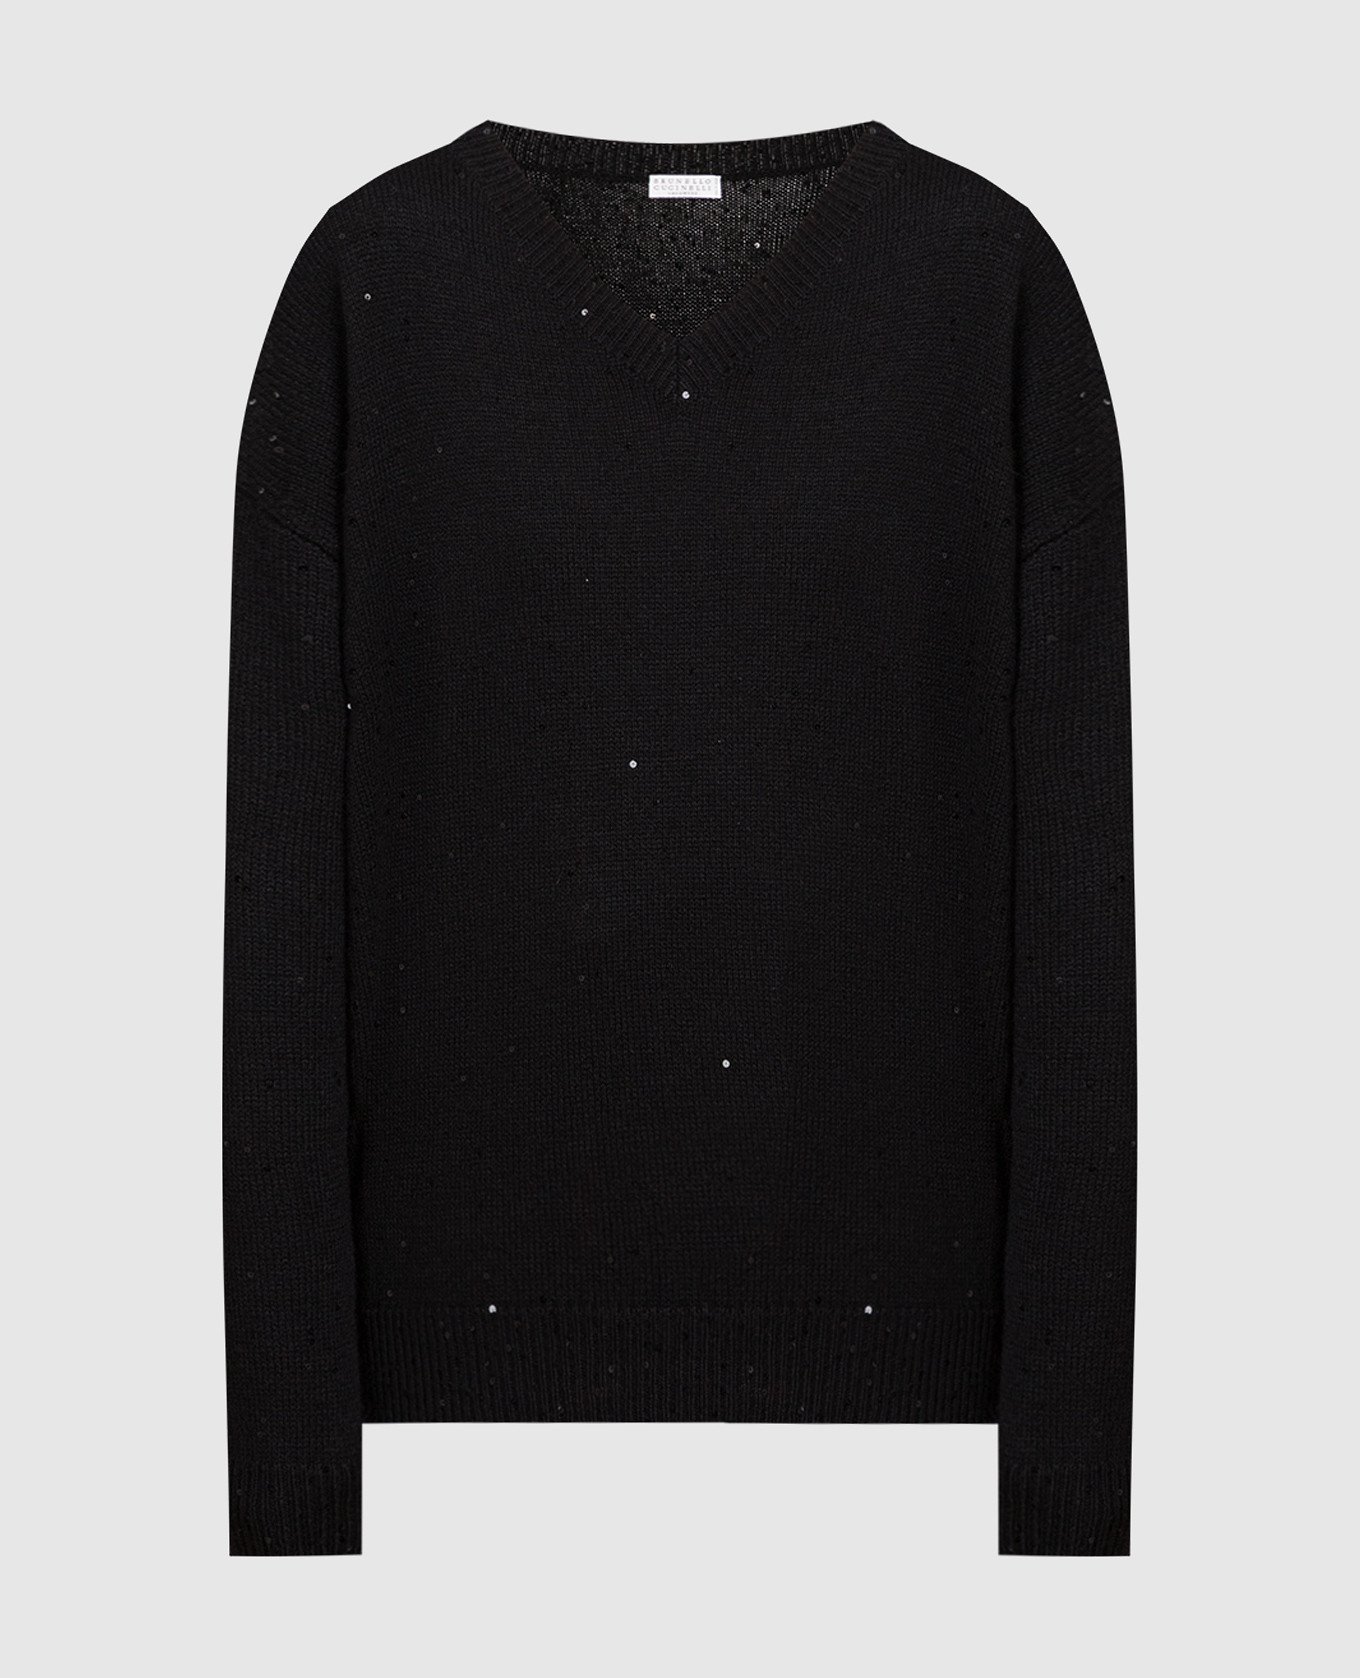 Черный пуловер из кашемира и шелка с пайетками.